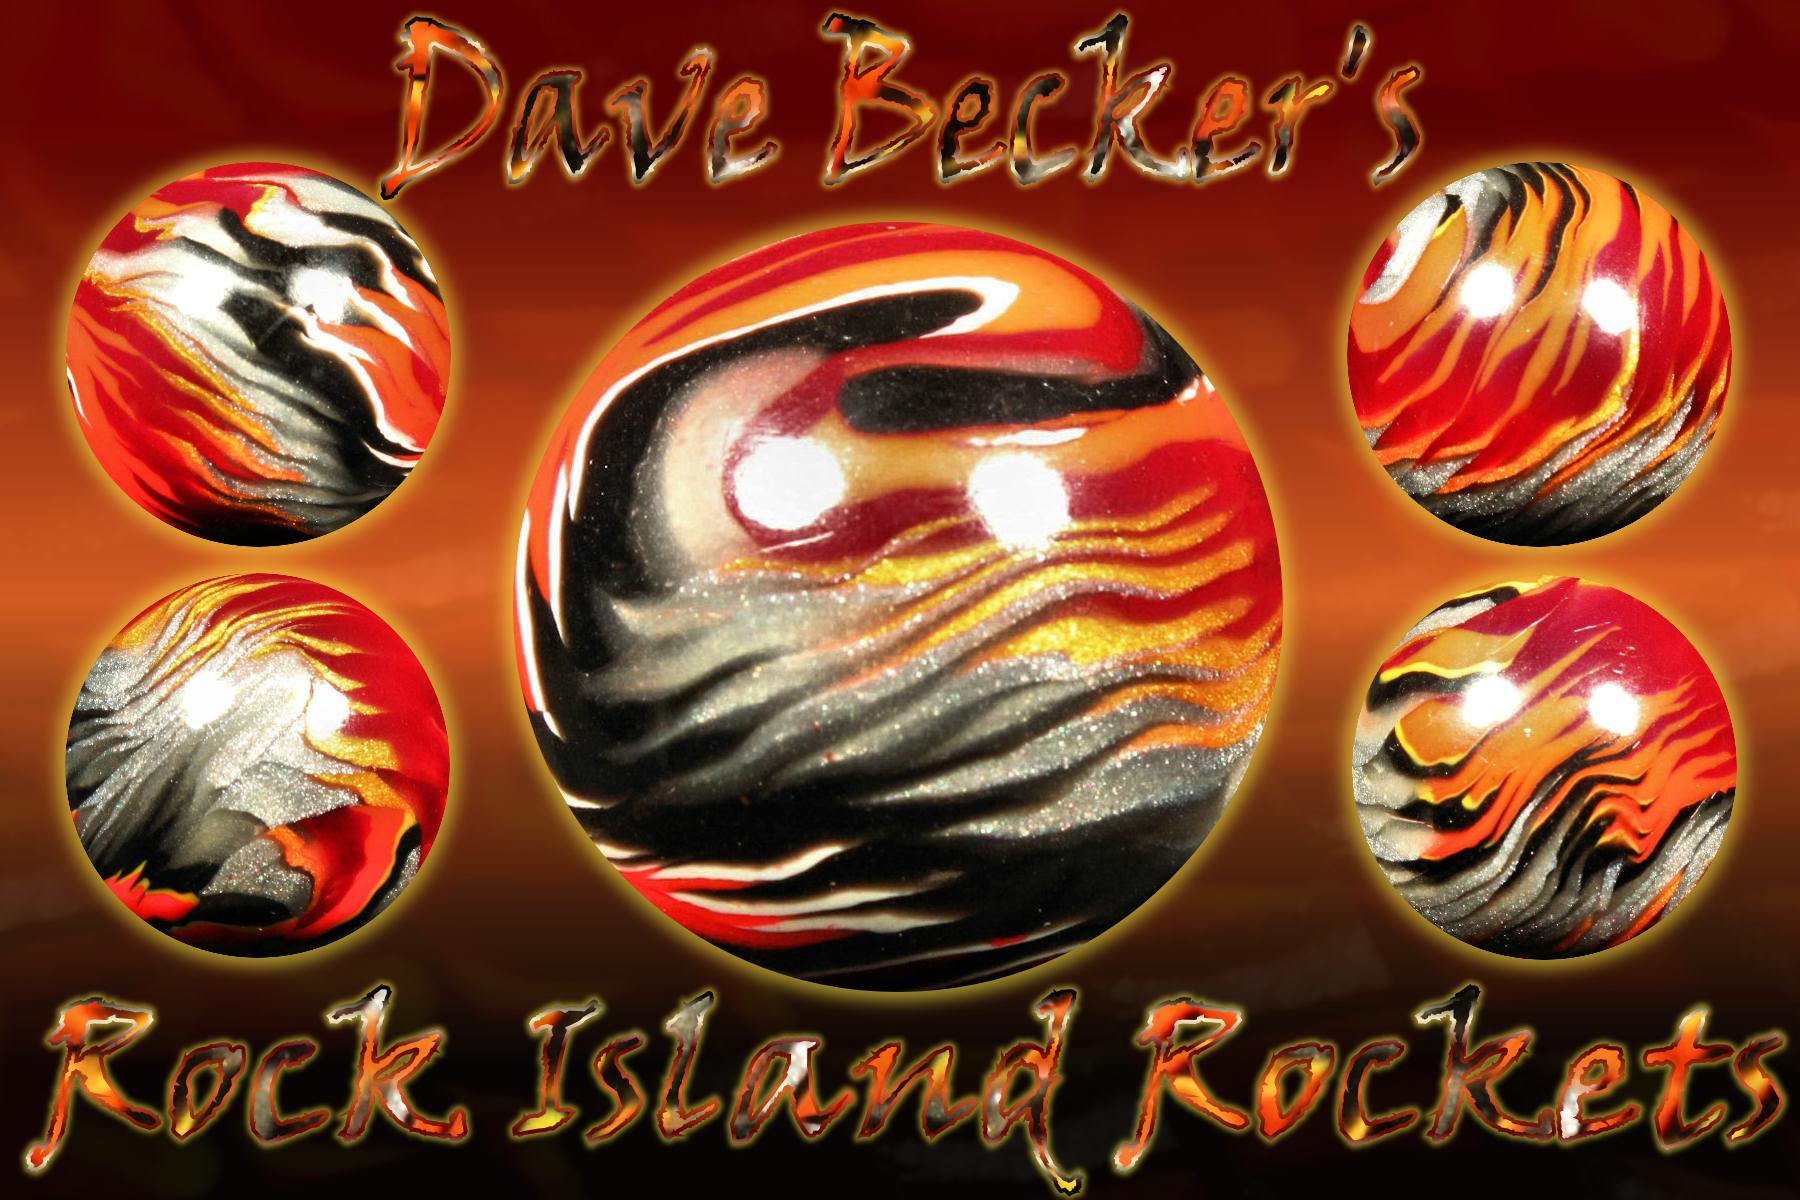 Dave Becker's Rock Island Rockets